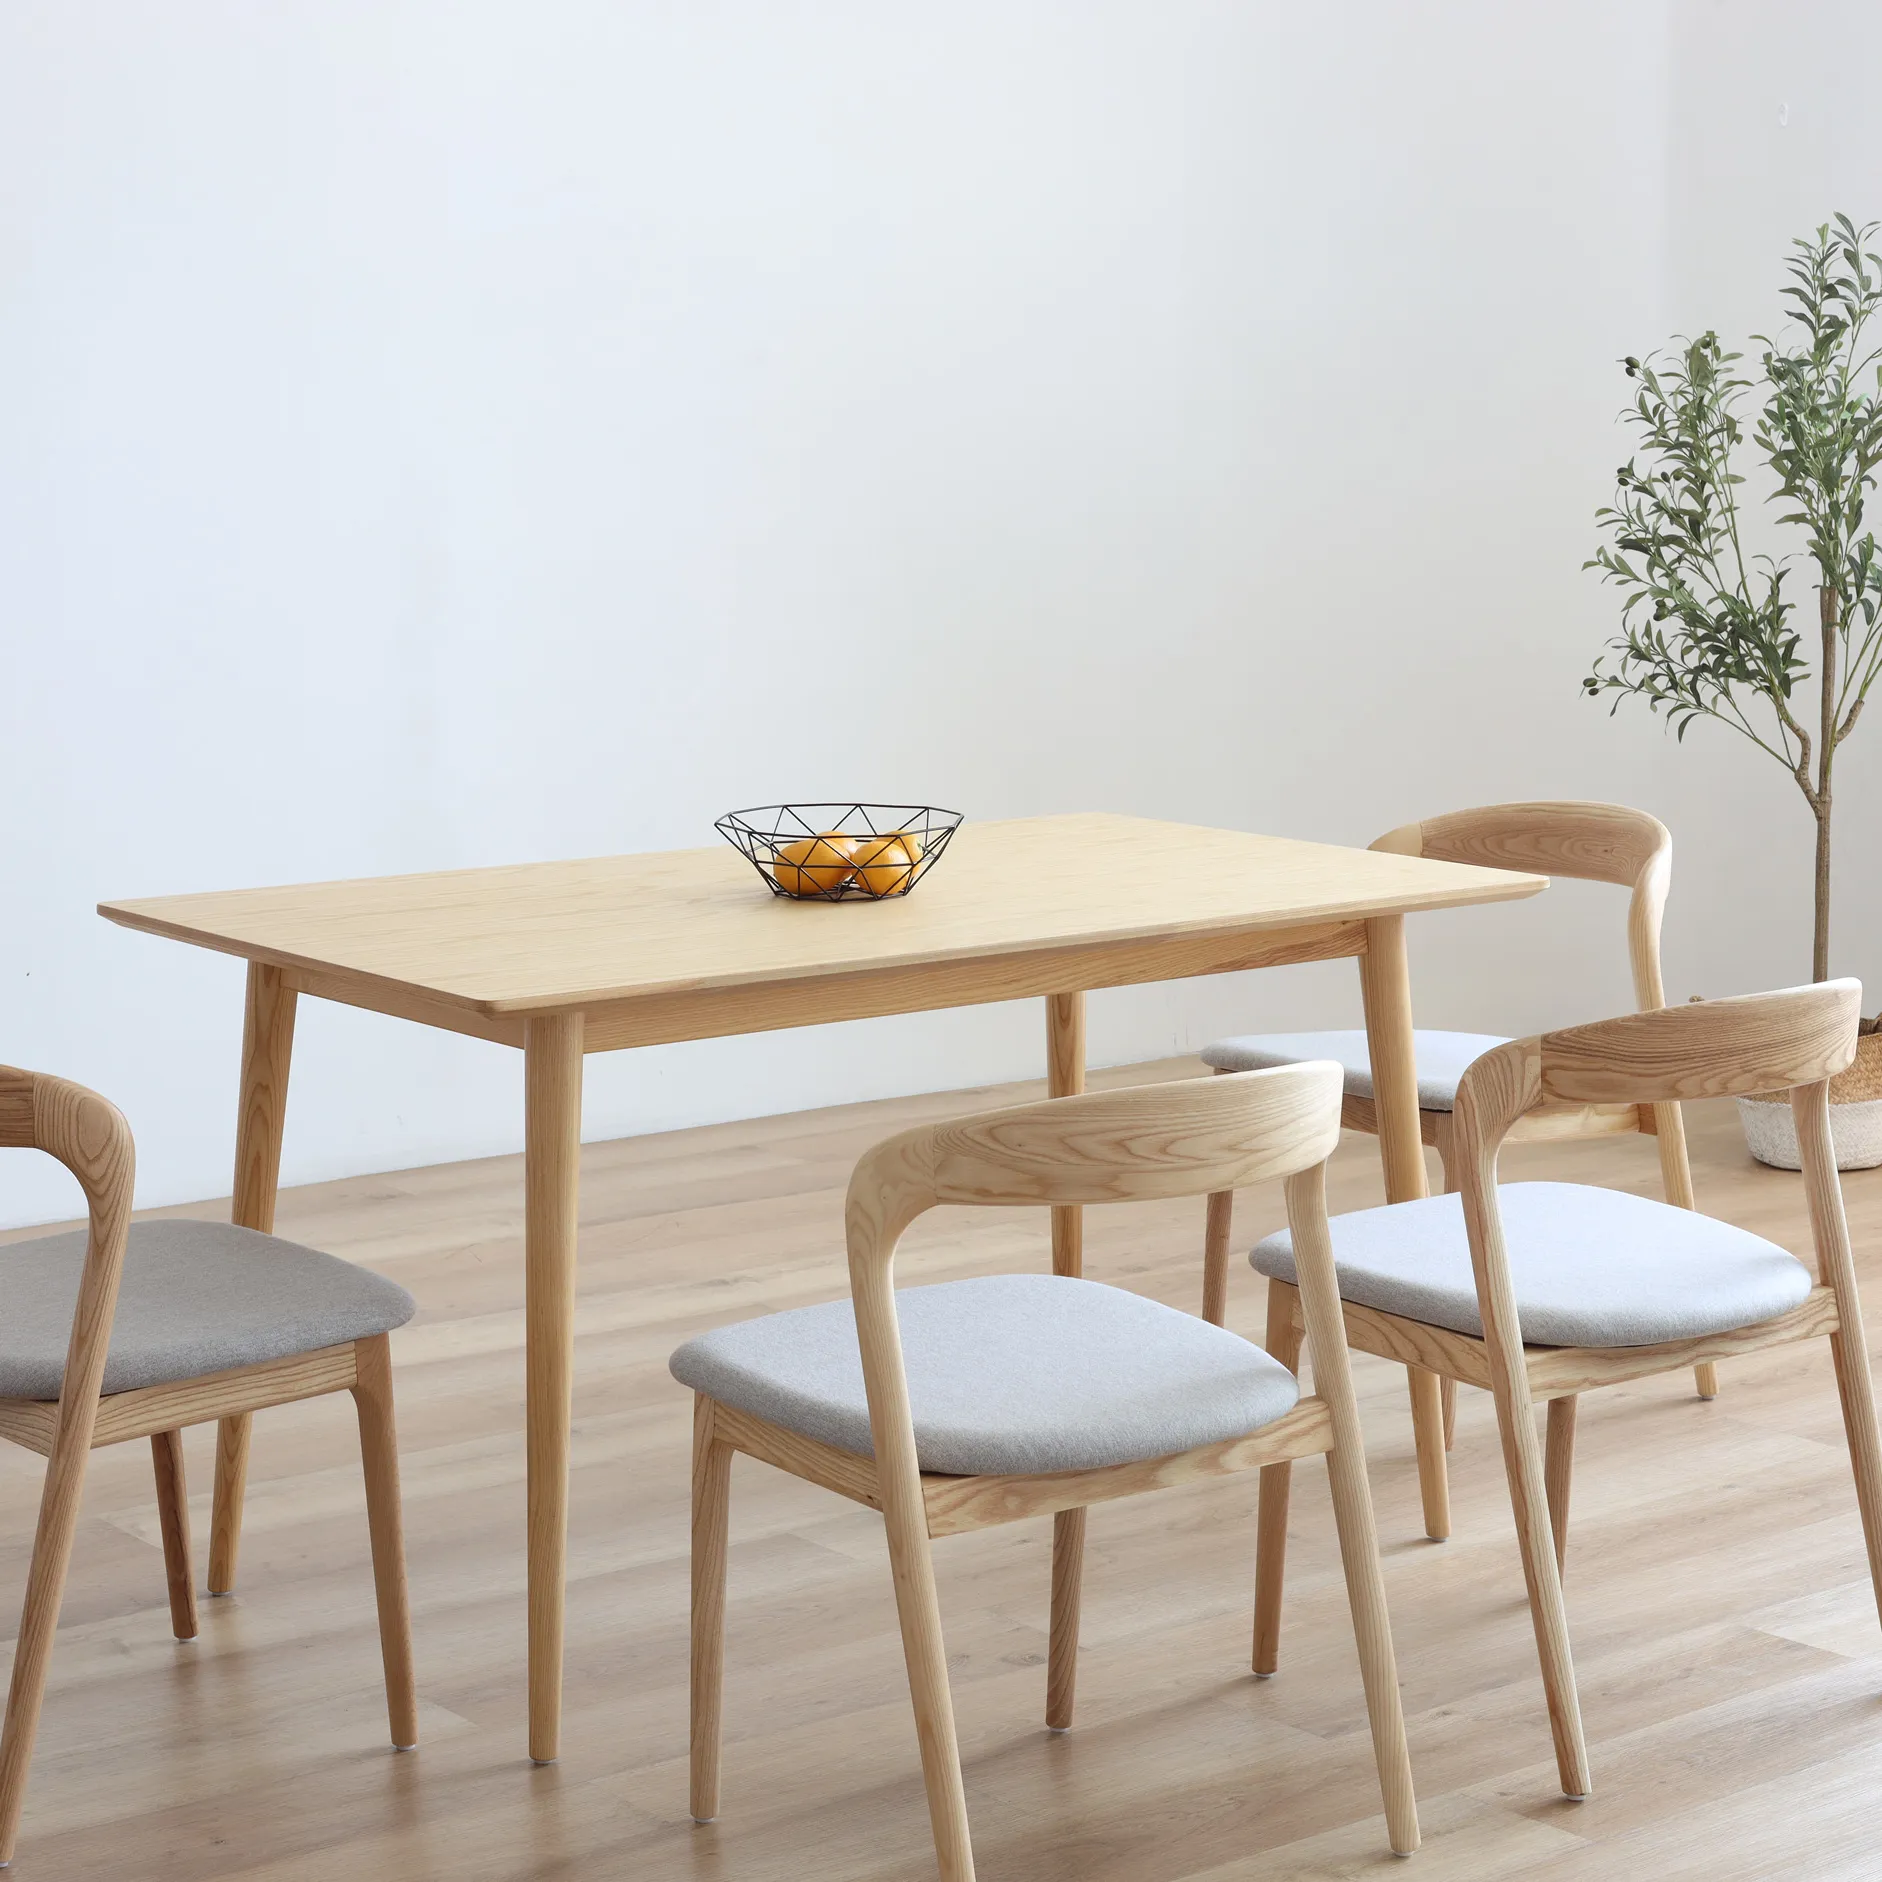 Nuevo moderno lujo restaurante muebles placa silla de madera café Hotel madera maciza mesa de comedor y sillas conjunto comedor